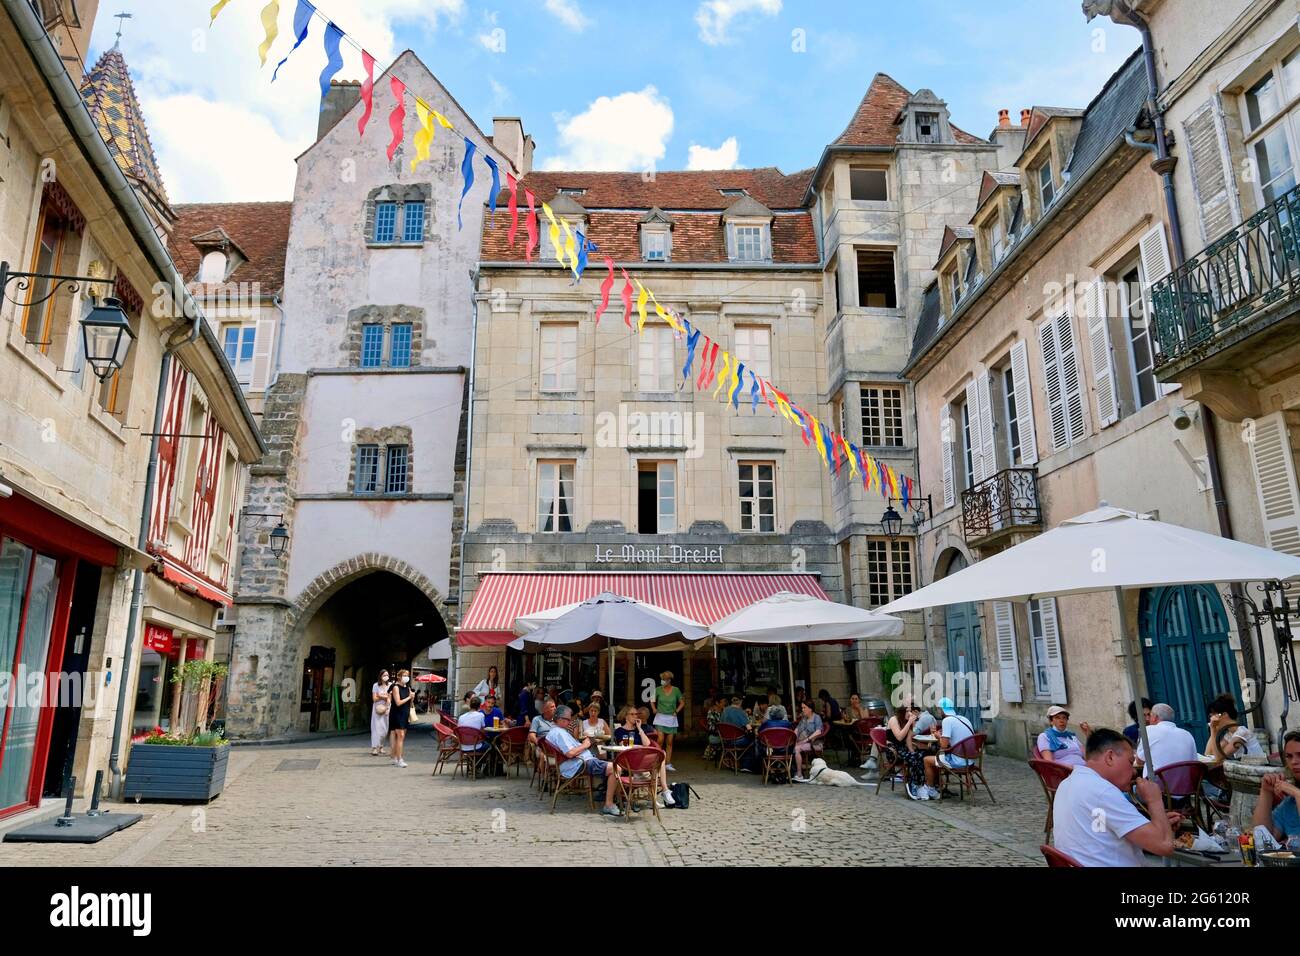 France, Cote d'Or, Semur en Auxois, medieval city, Rue Buffon, terrace of the restaurant Le Mont Drejet Stock Photo